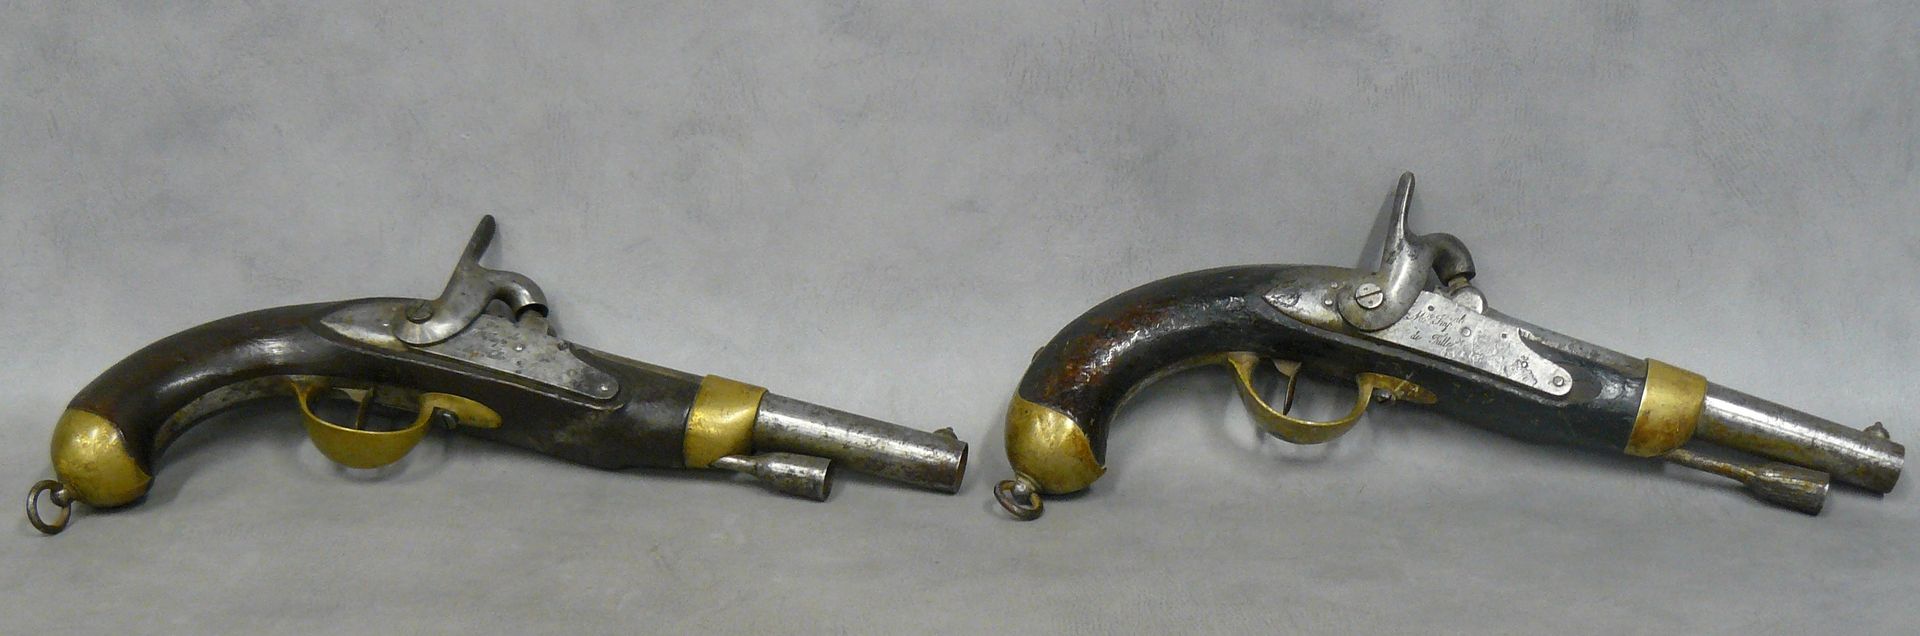 Null zwei Perkussionspistolen Modell 1822 T bis, neu gebaut, Läufe datiert 1856,&hellip;